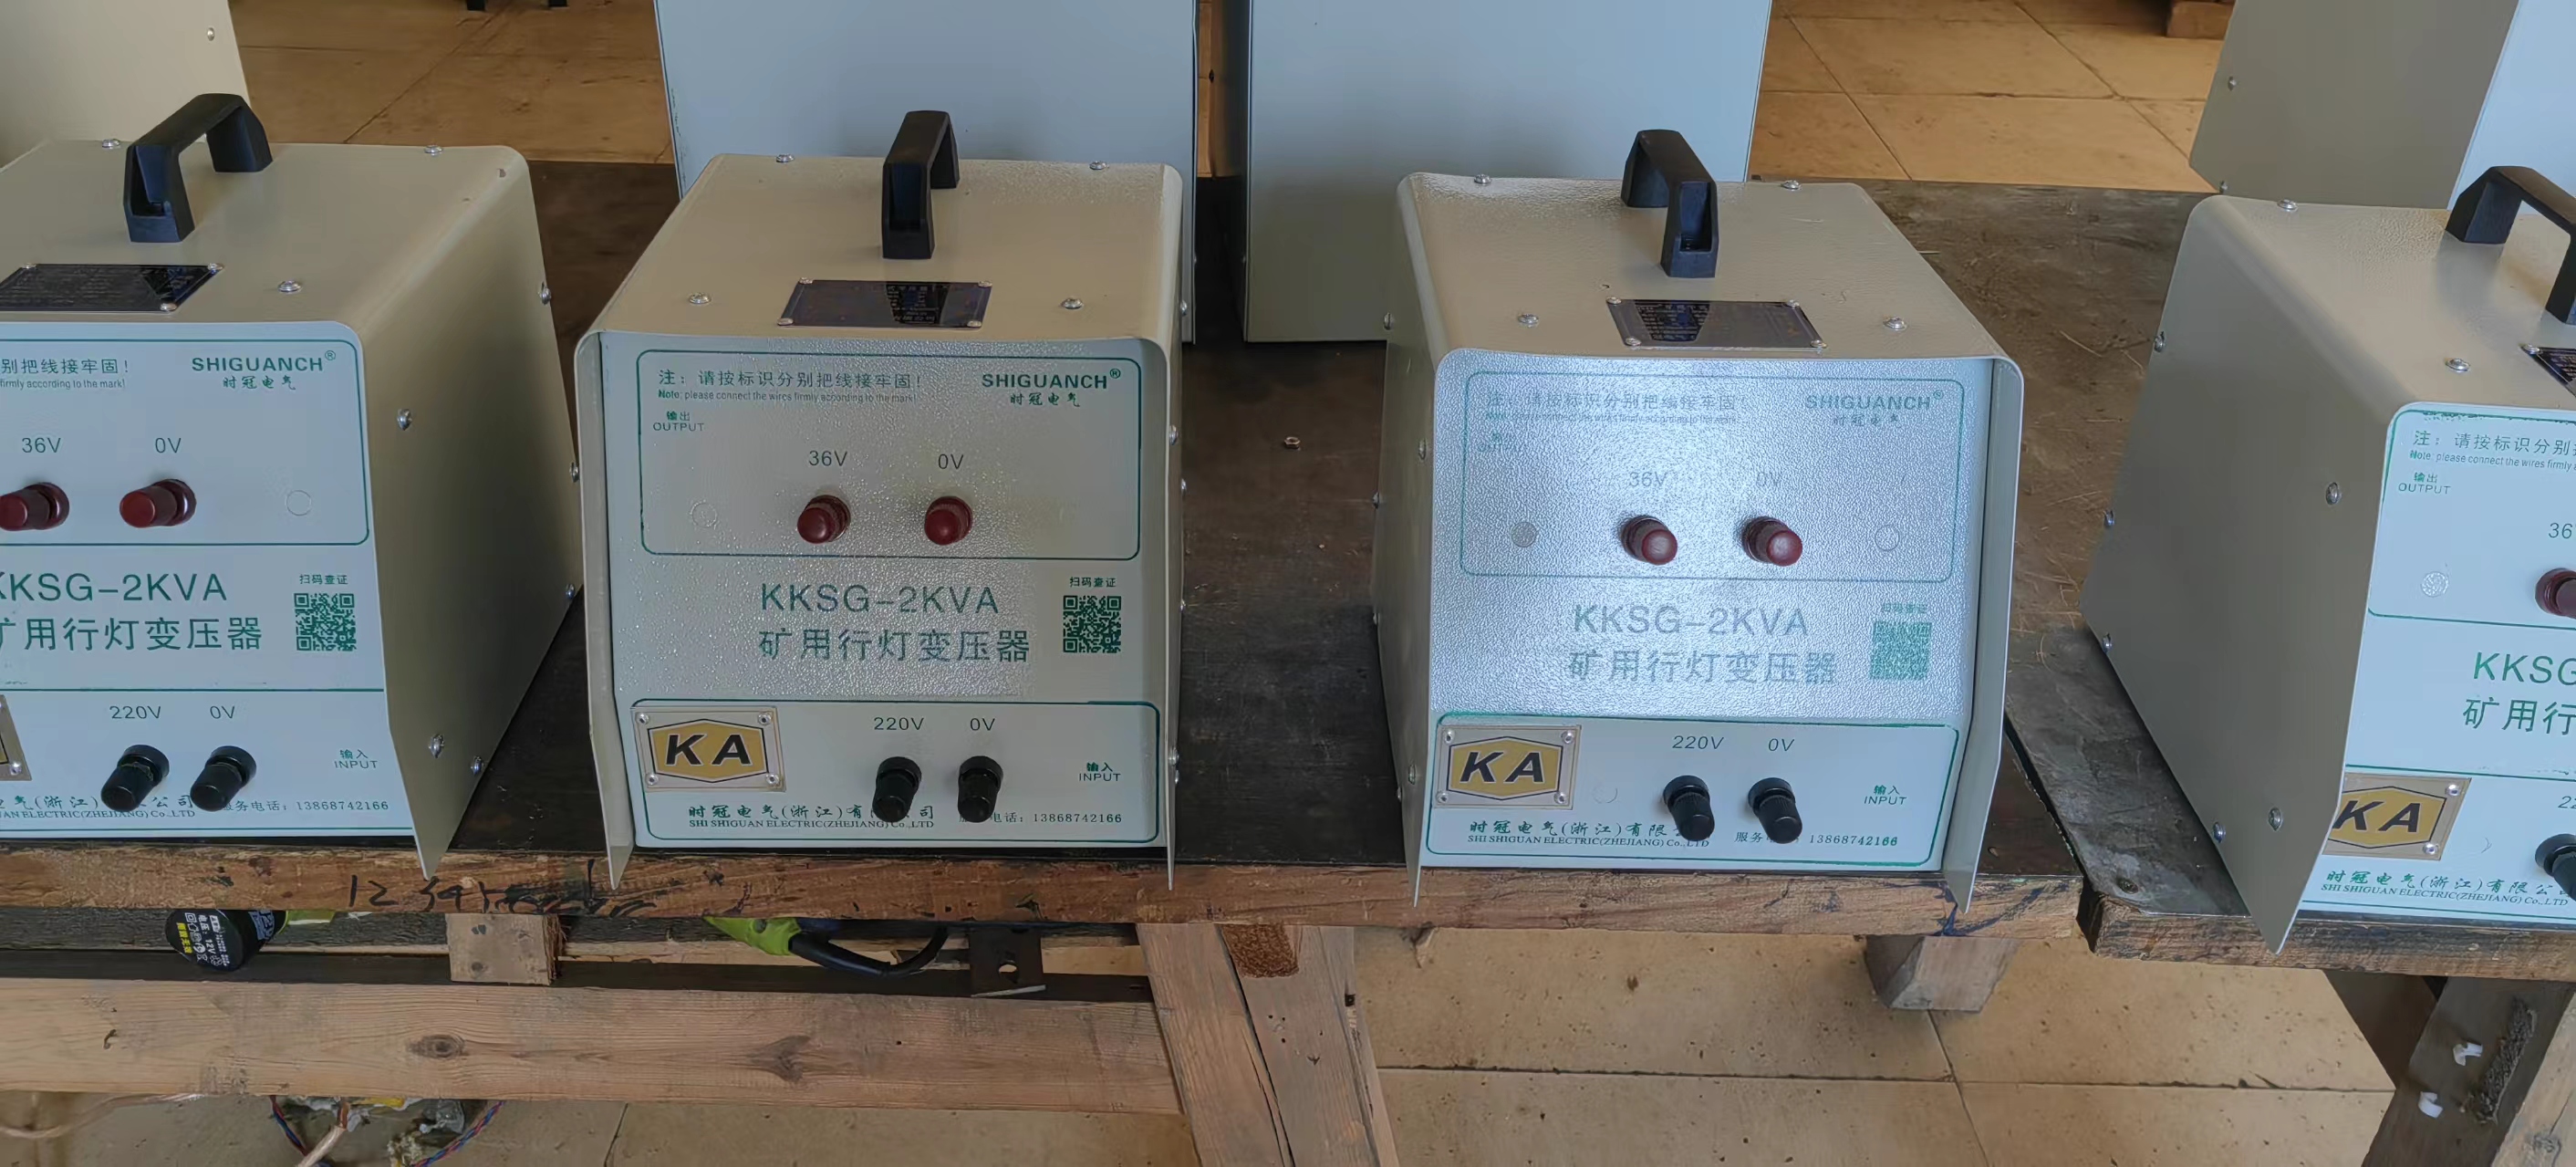 KKSG-2KVA矿用行灯变压器批发价-供应商-报价-价格-多少钱